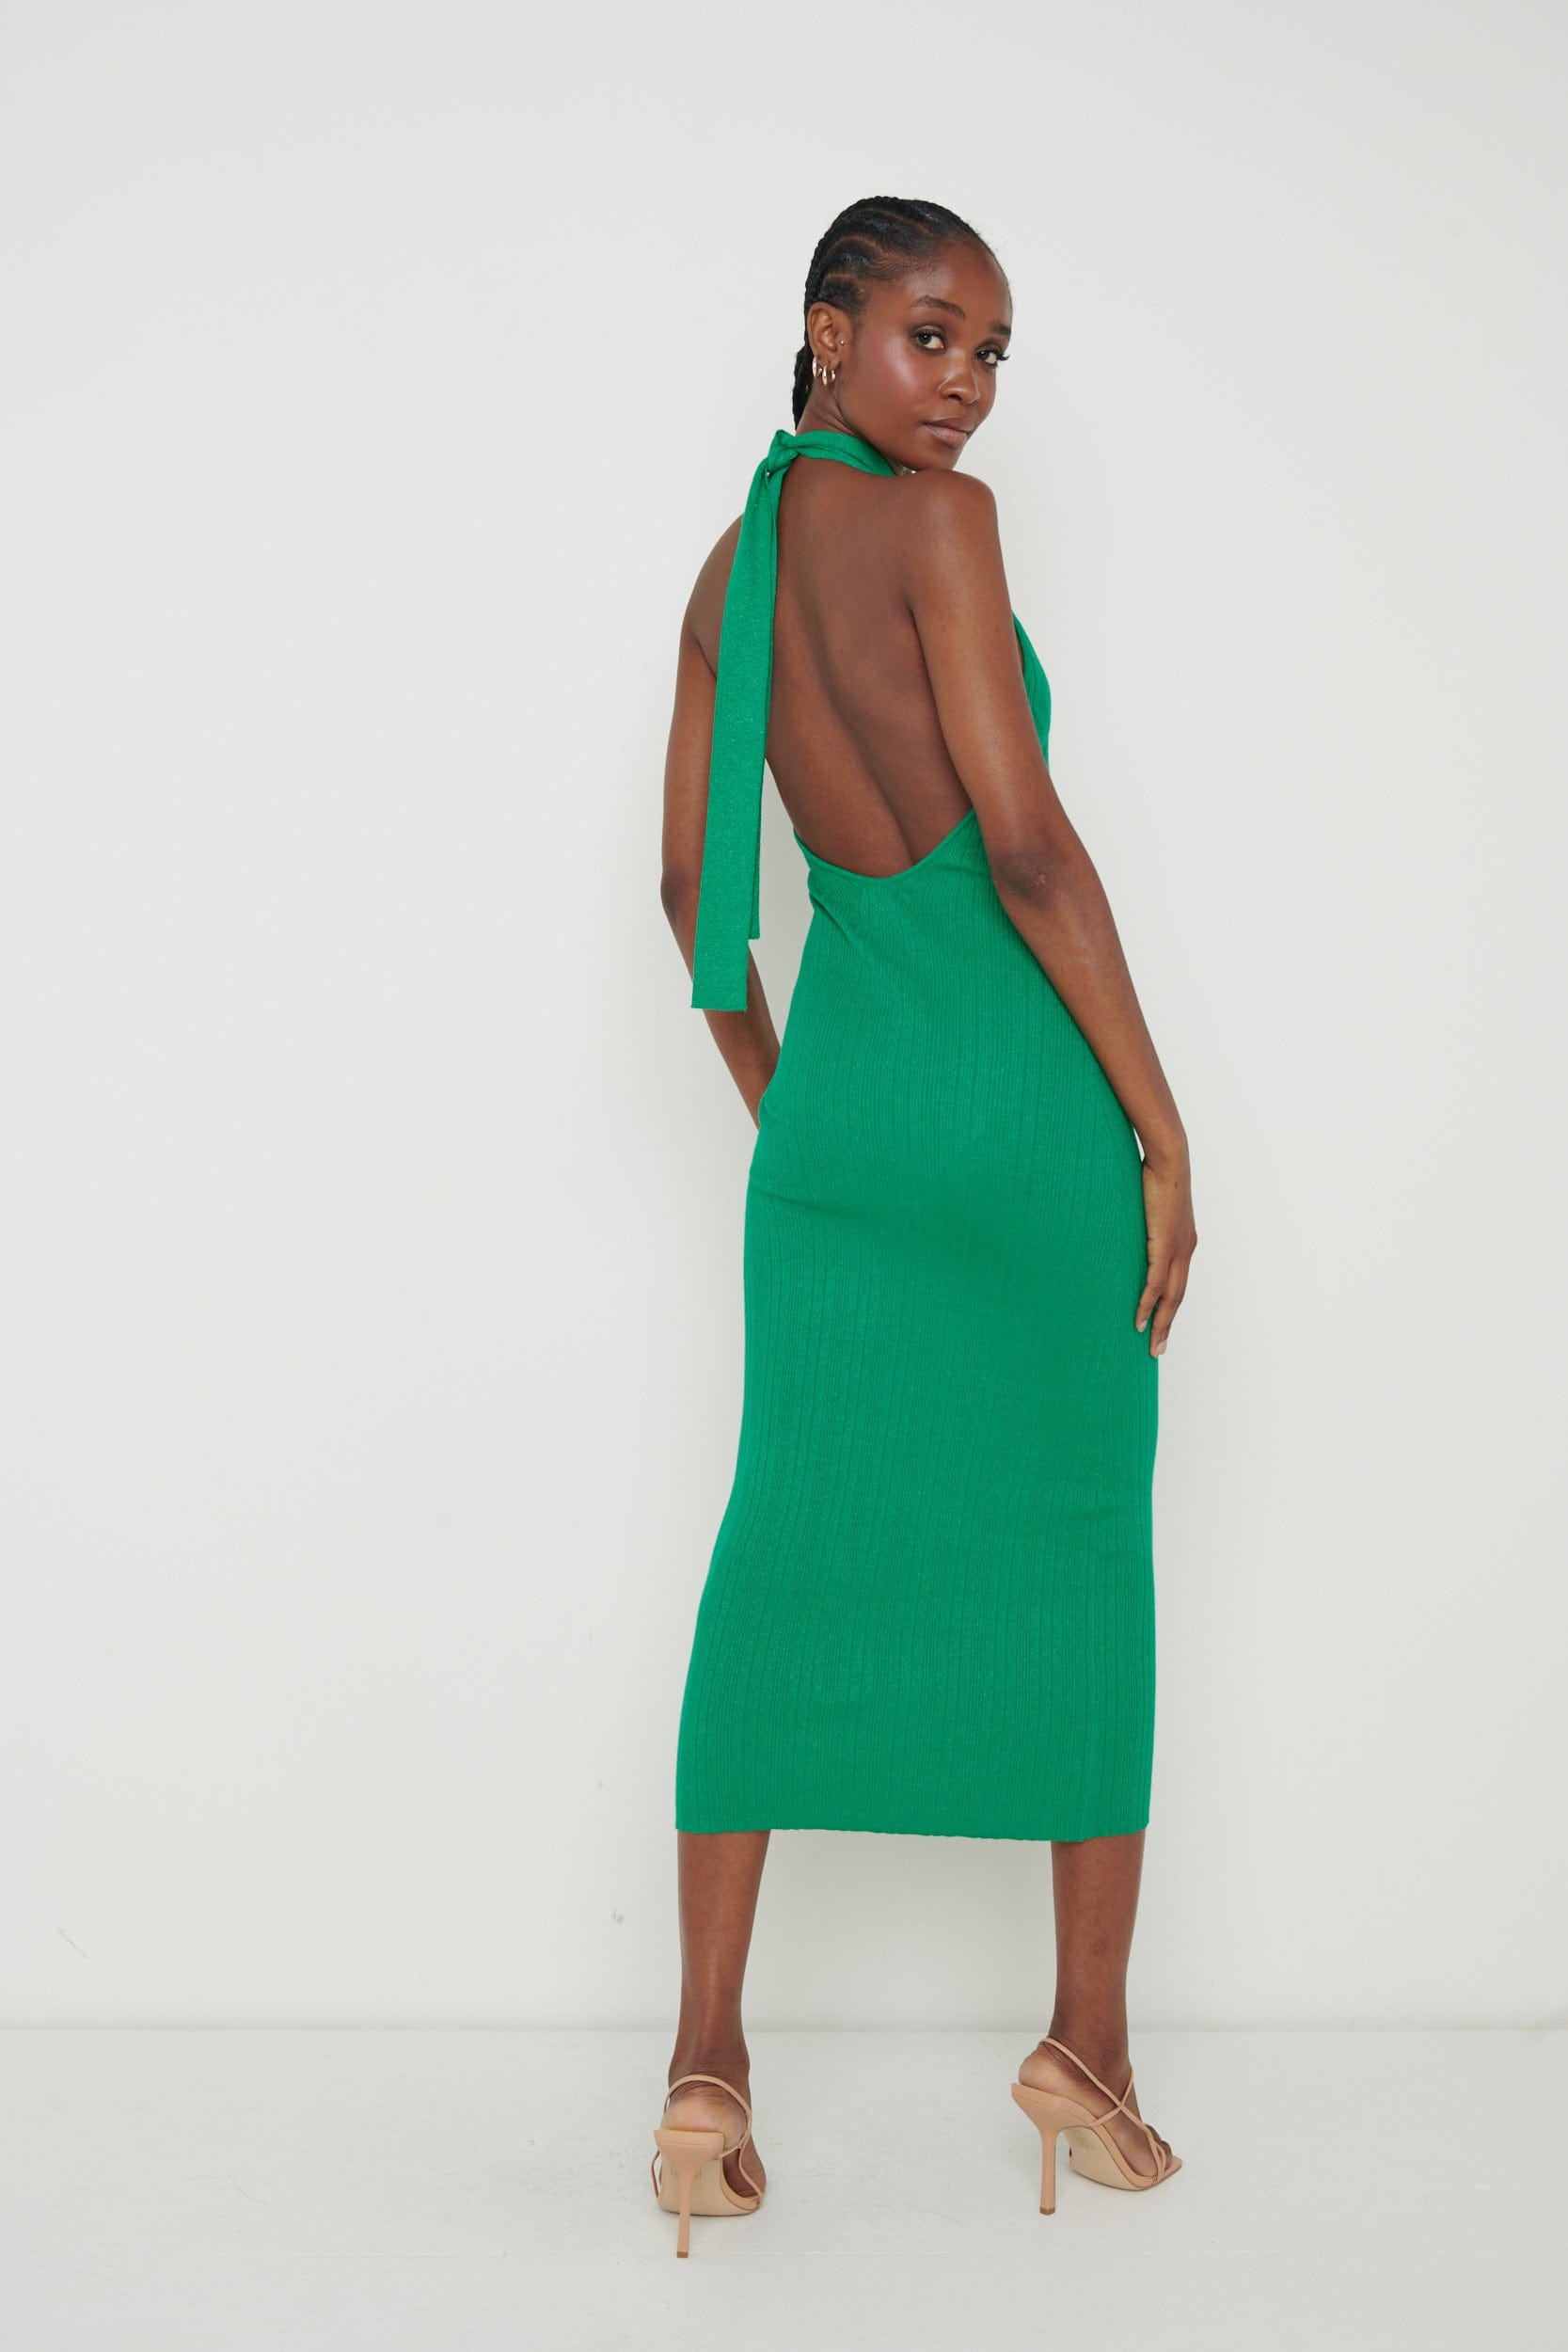 Raleigh Knit Midaxi Dress - Emerald Green